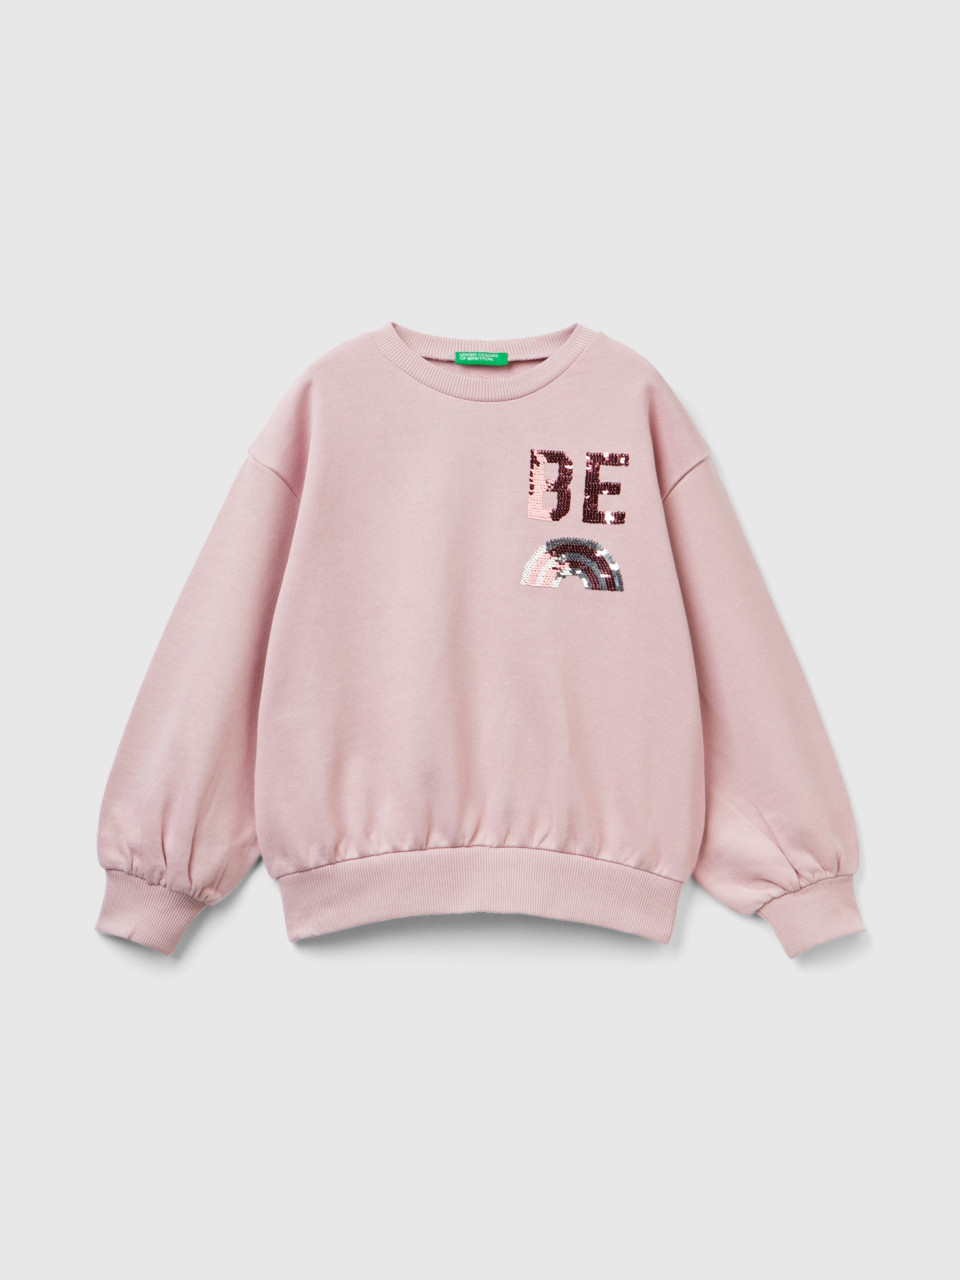 Benetton, Sweatshirt With Reversible Sequins, Pink, Kids